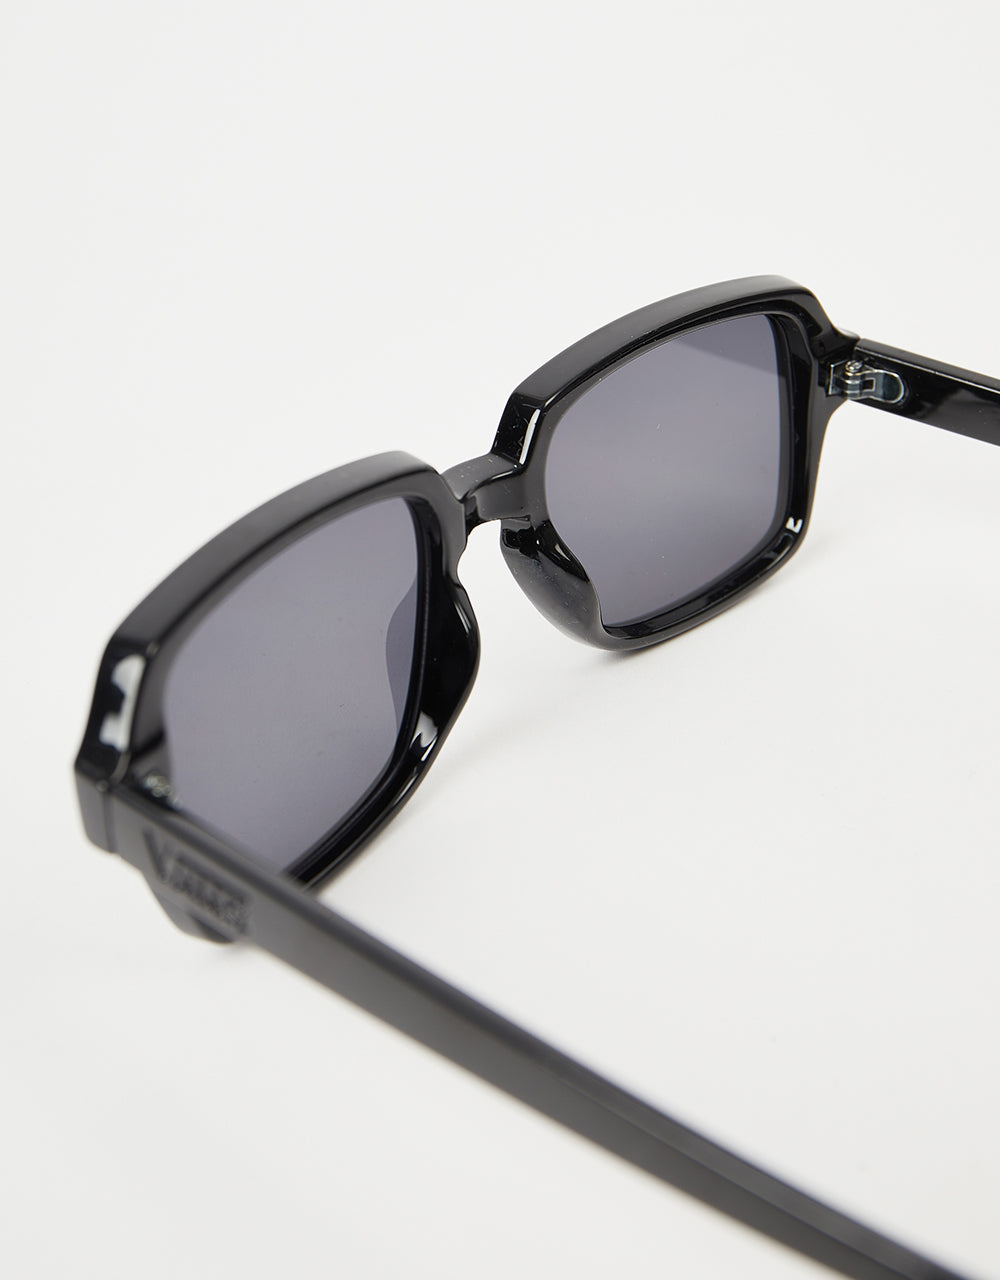 Vans Cutley Sunglasses - Black